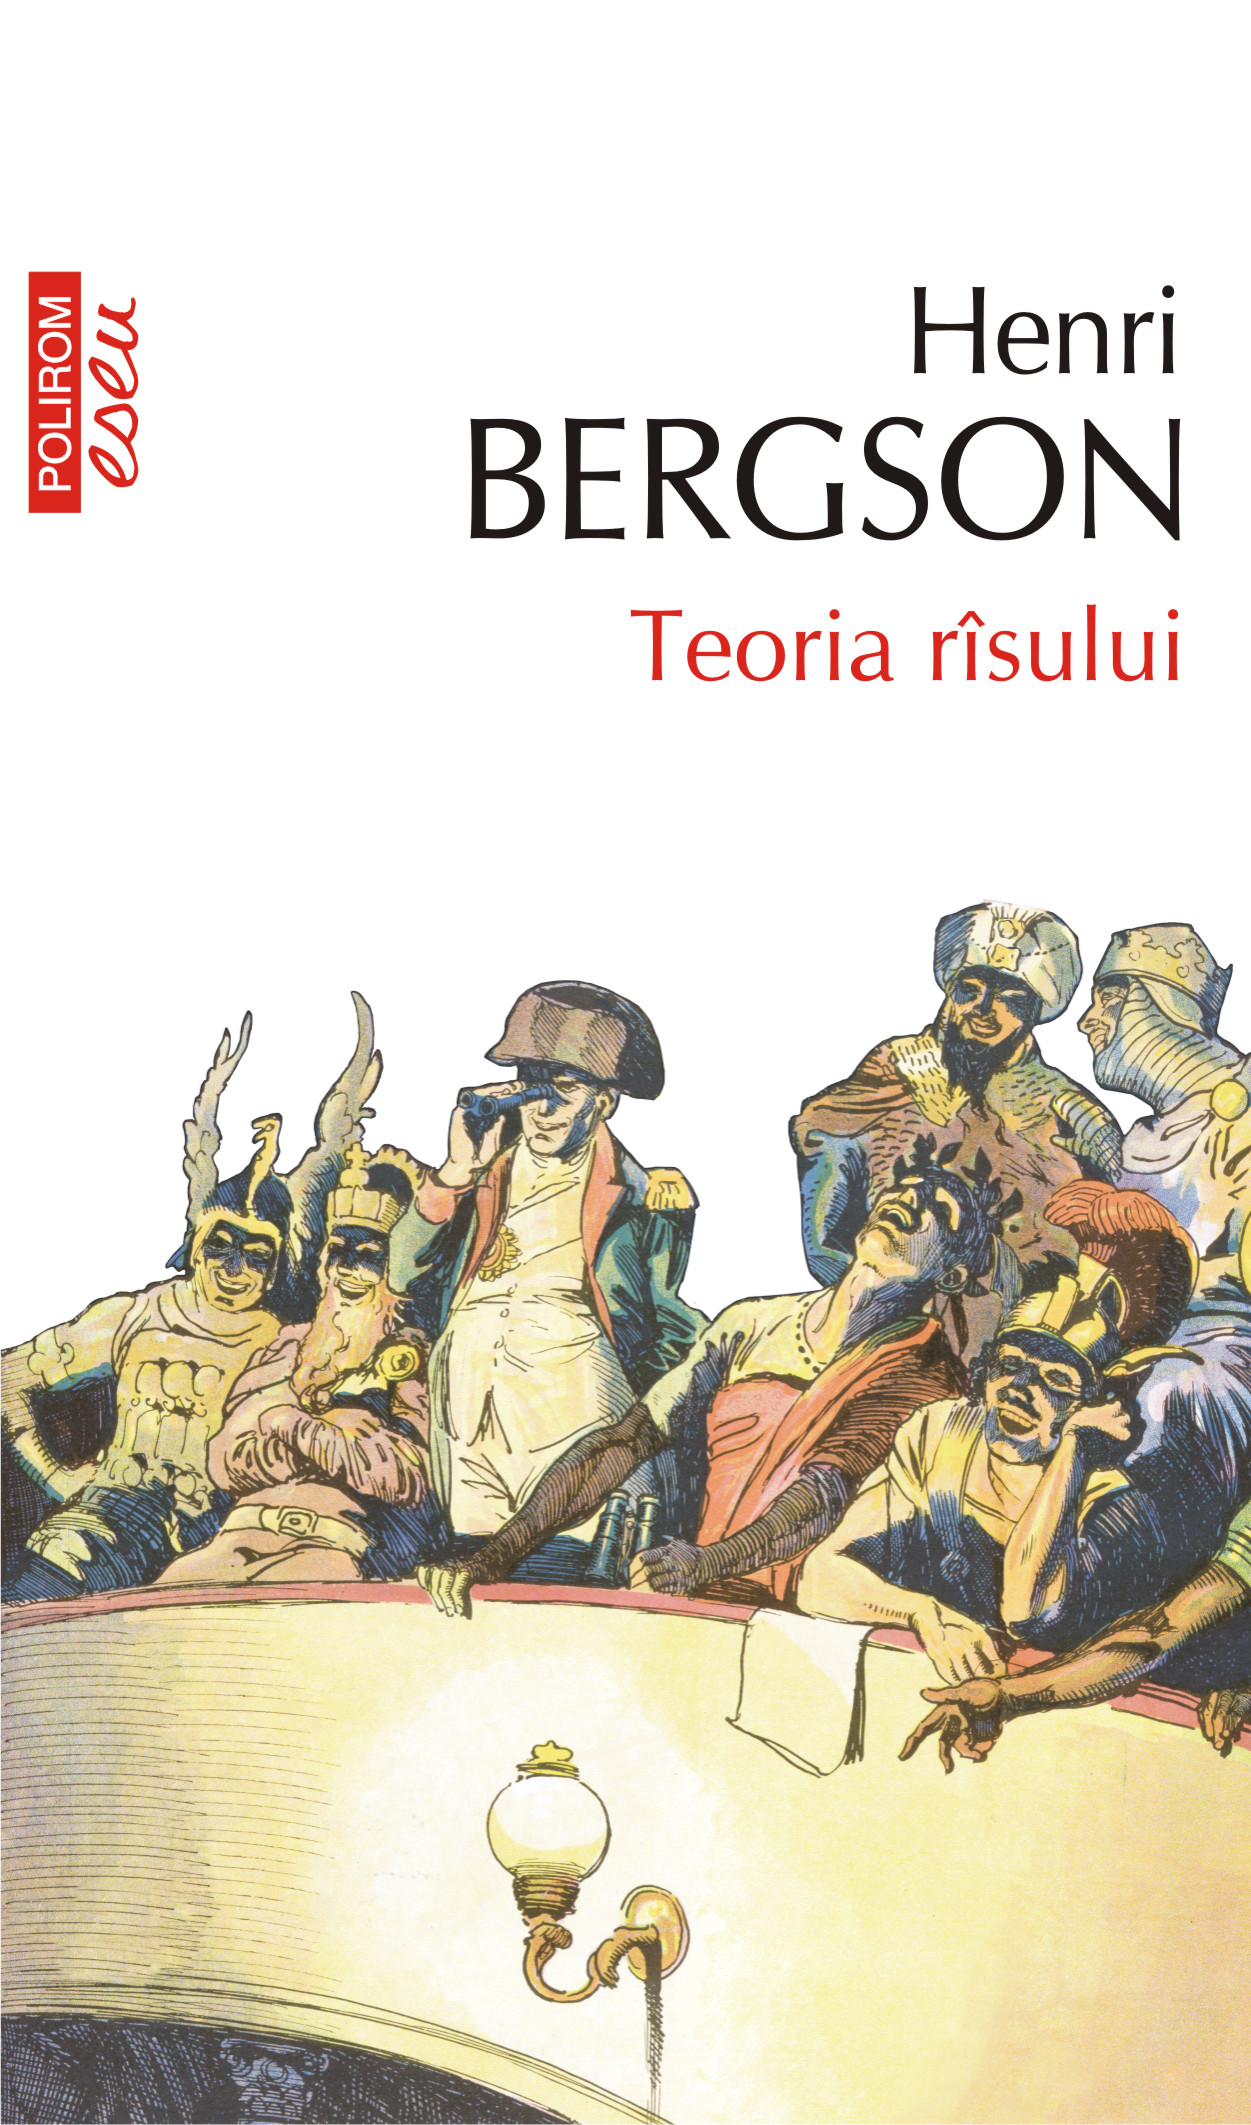 eBook Teoria risului - Henri Bergson